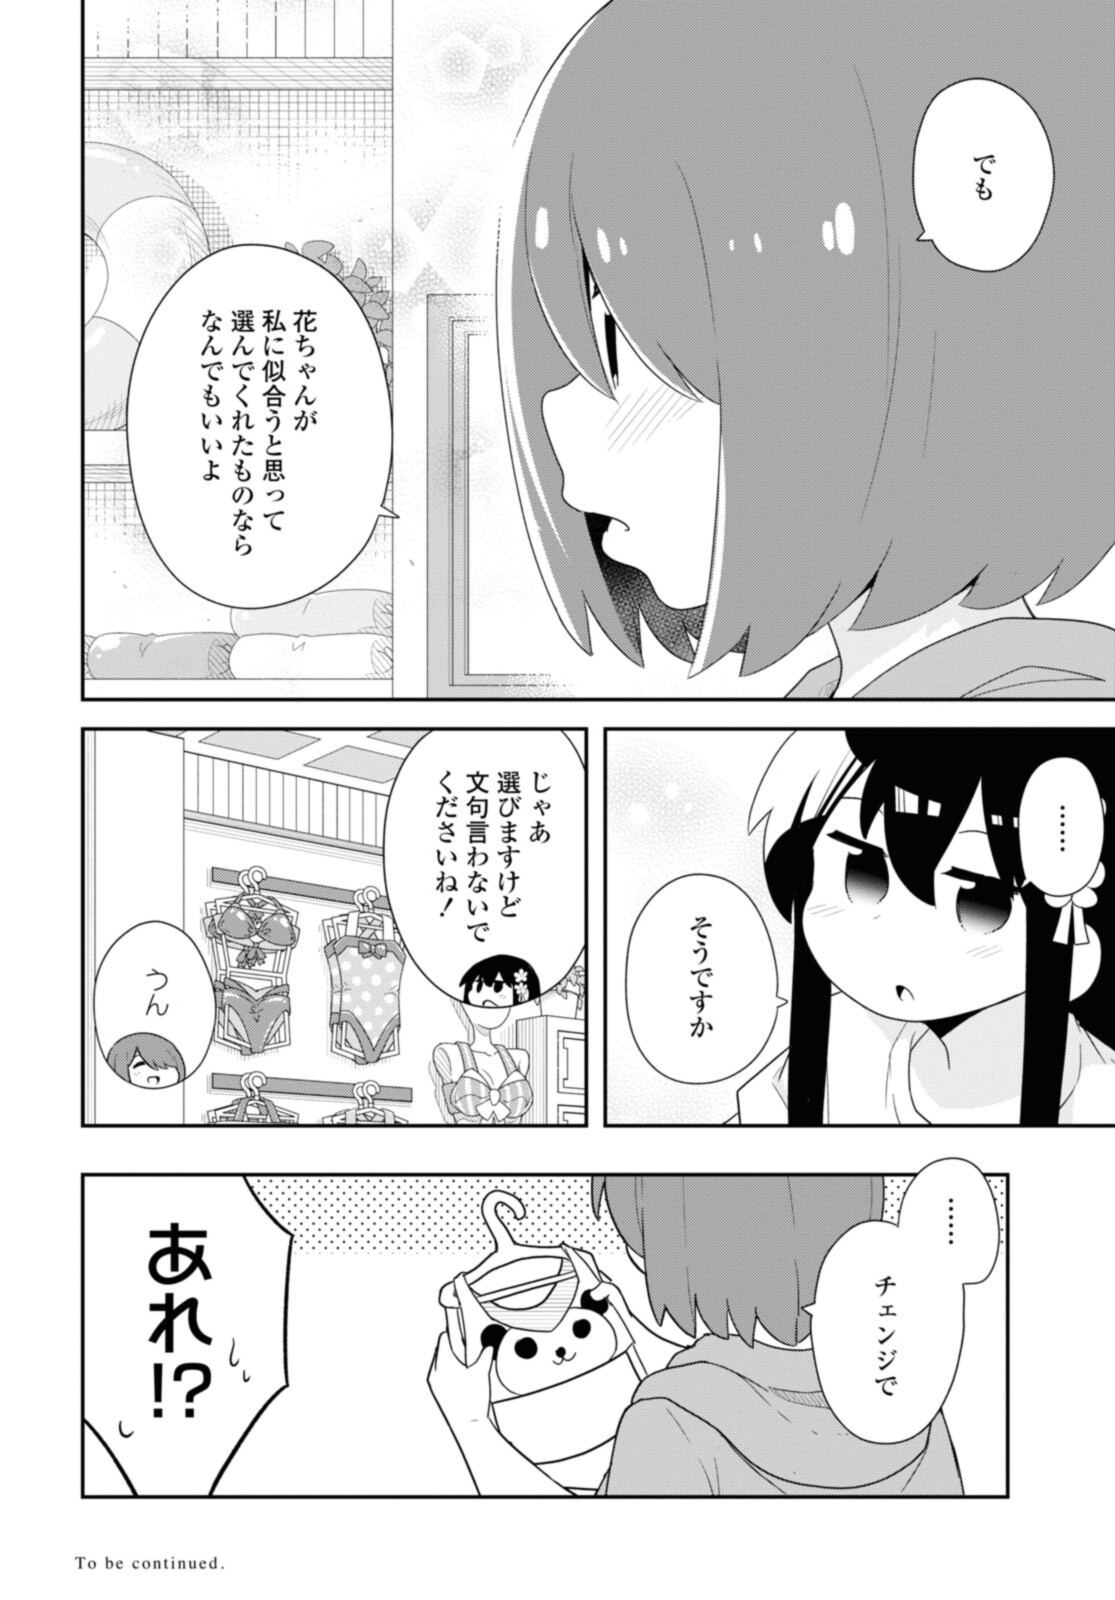 Watashi ni Tenshi ga Maiorita! - Chapter 93 - Page 14